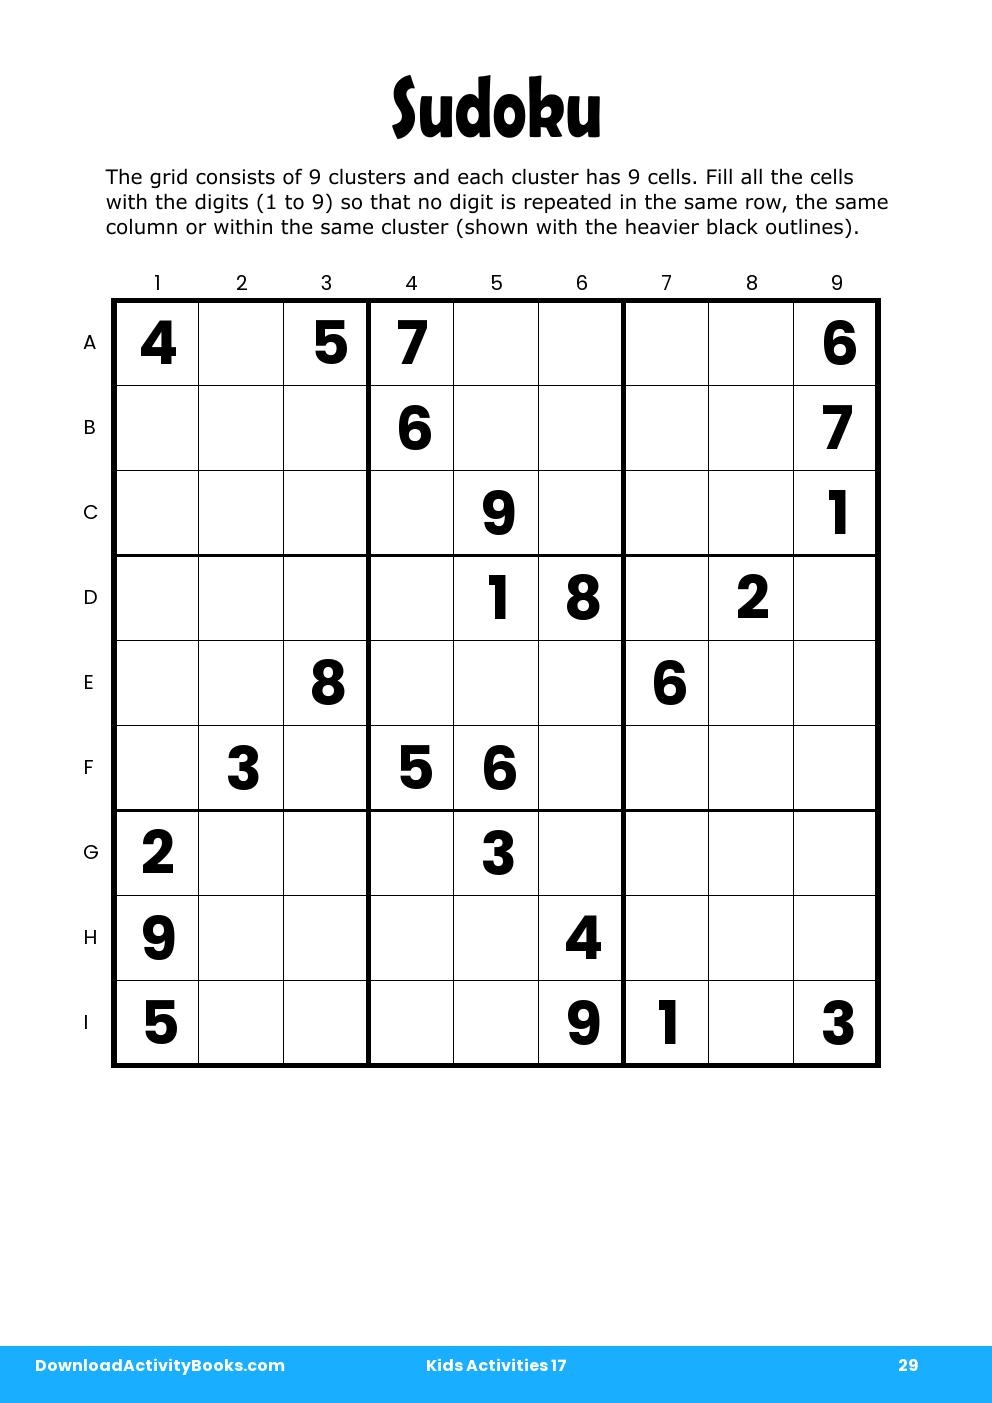 Sudoku in Kids Activities 17